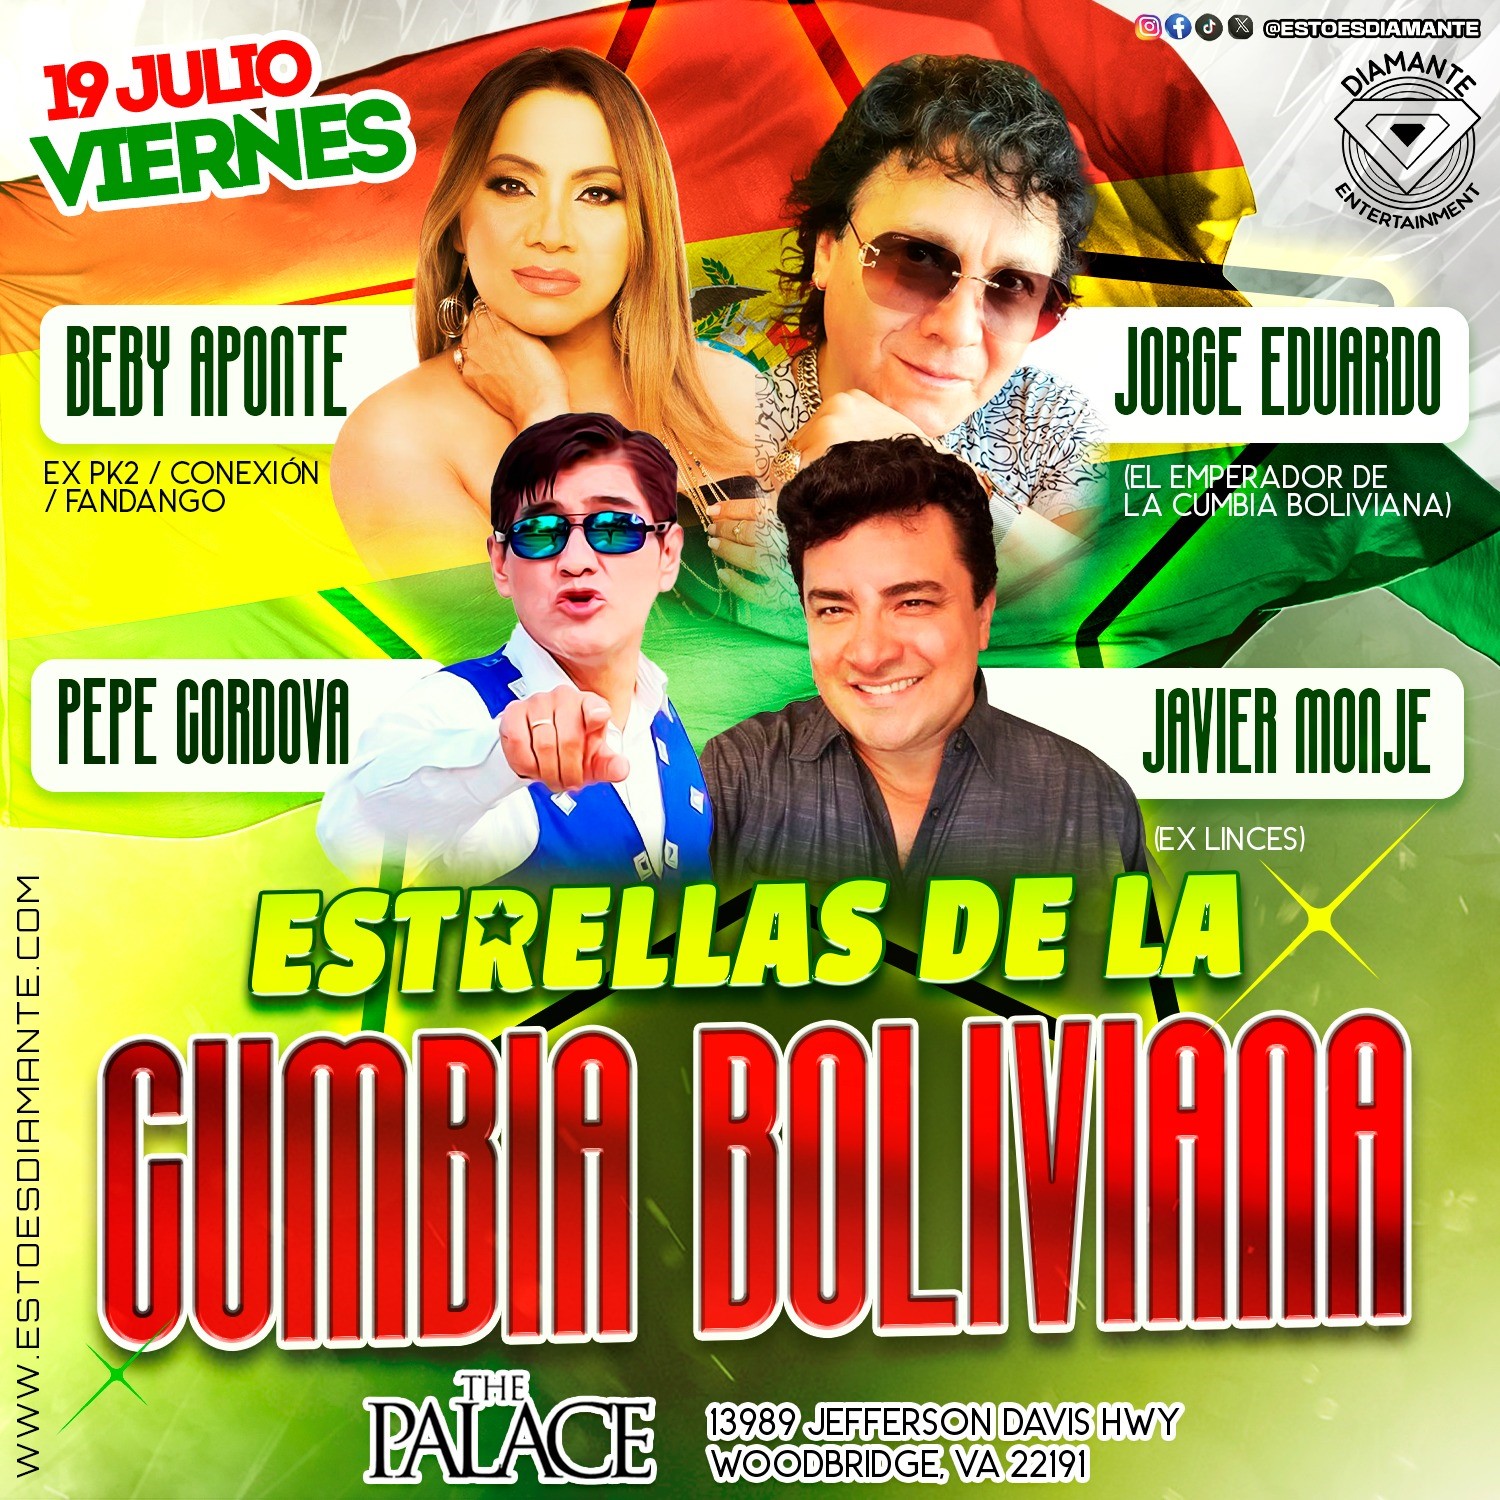 Estrellas De La Cumbia Boliviana  on jul. 19, 21:00@THE PALACE - Elegir asientoCompra entradas y obtén información enDiamante Entertainment 